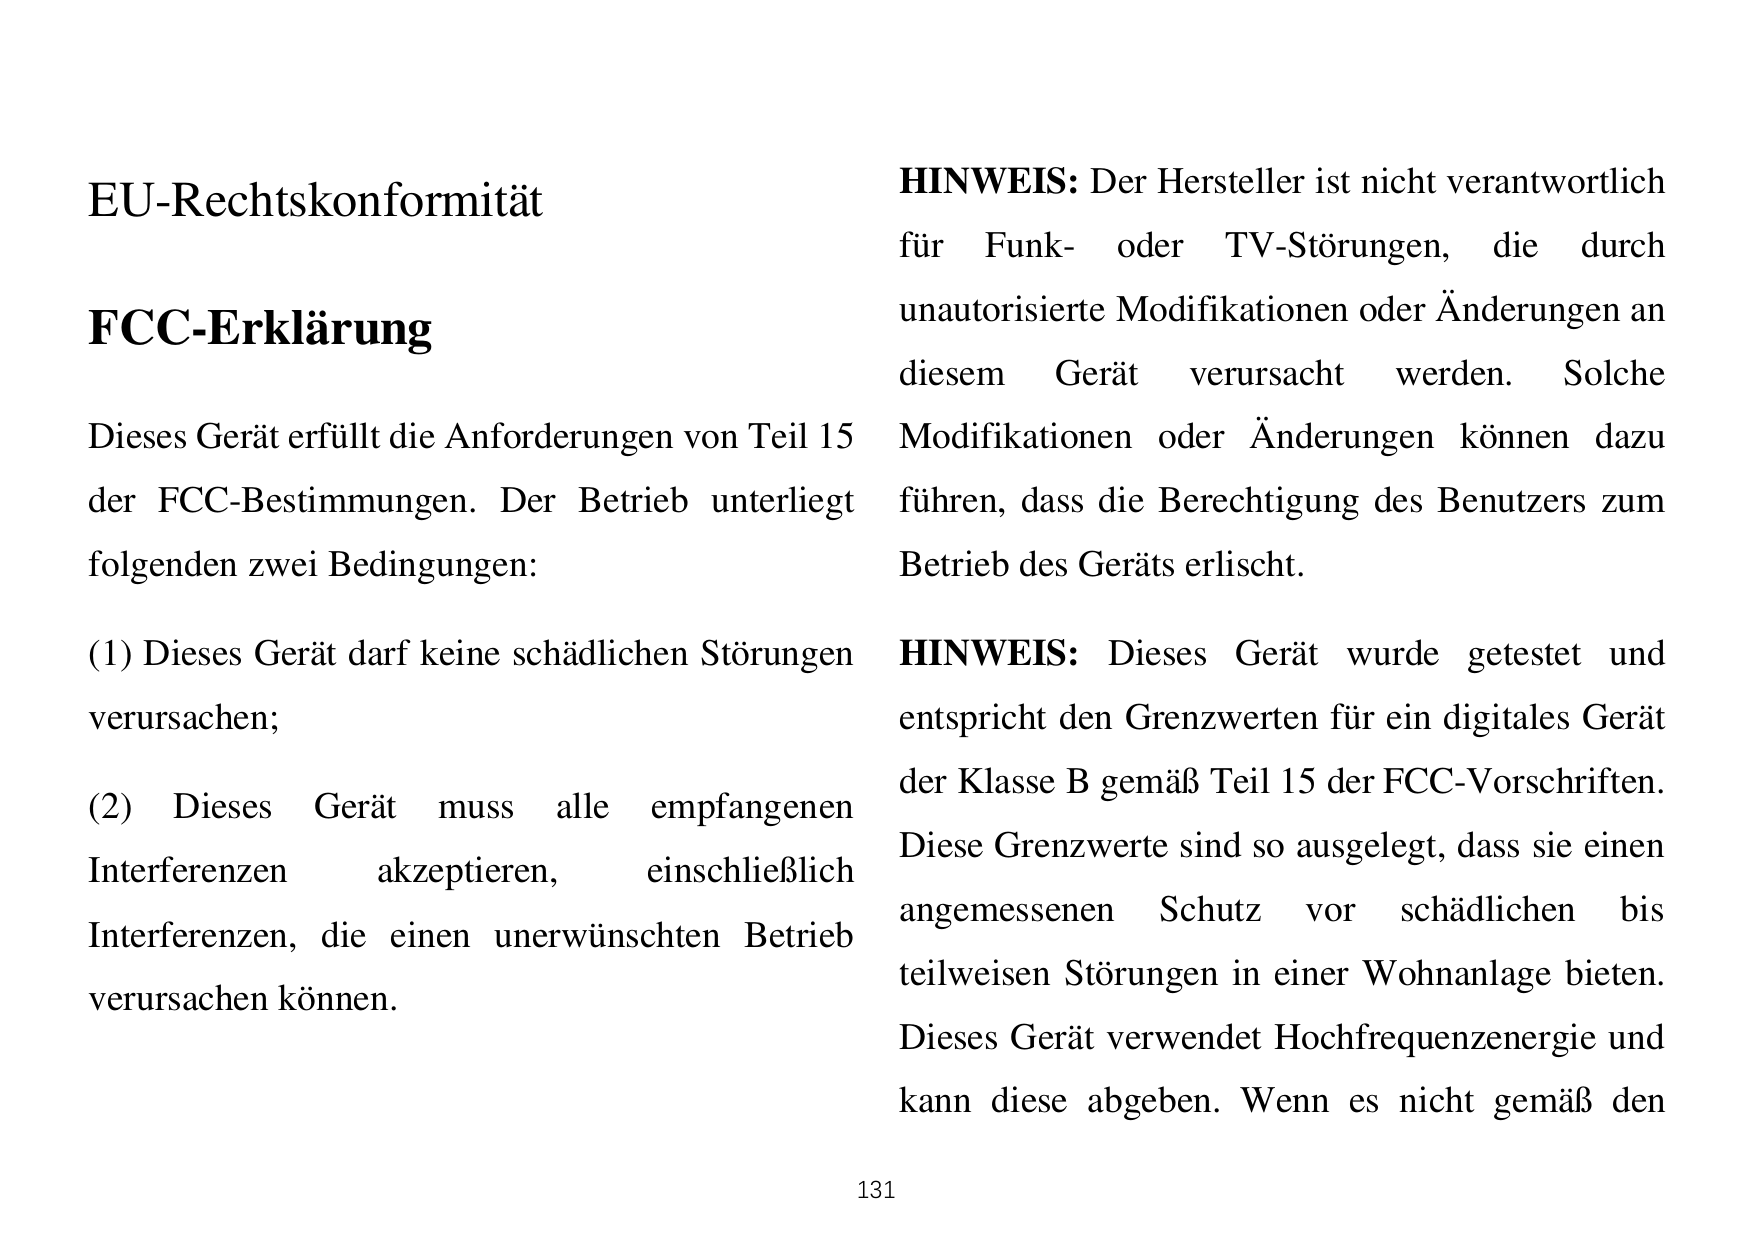 HINWEIS: Der Hersteller ist nicht verantwortlichEU-RechtskonformitätfürFunk-oderTV-Störungen,diedurchunautorisierte Modifikation